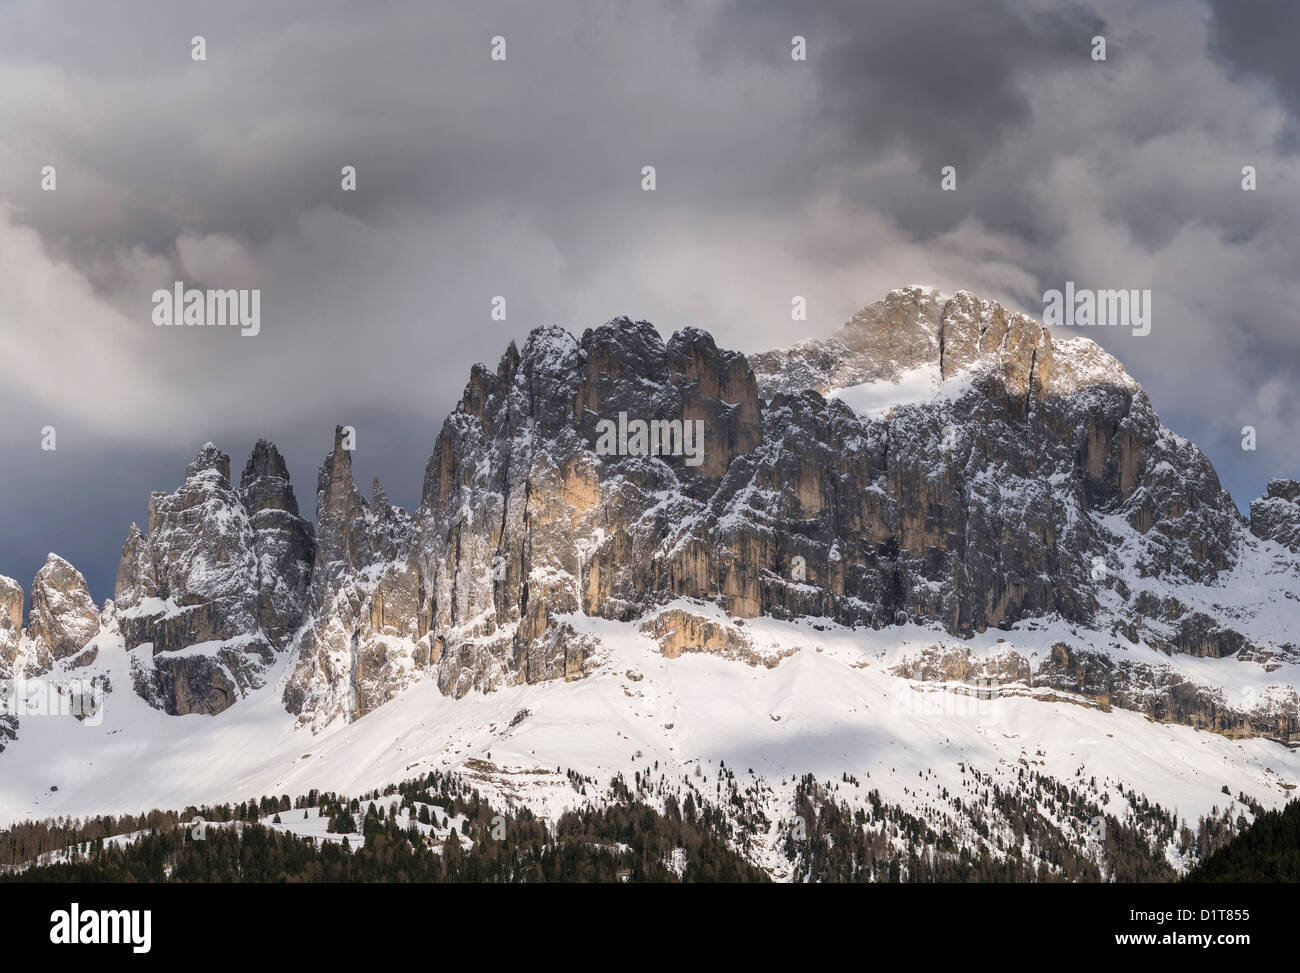 Rosengarten oder Rosengarten Berge der Dolomiten von Südtirol nach einem Schneesturm im Frühling. Dolomiten, Italien, Südtirol. Stockfoto